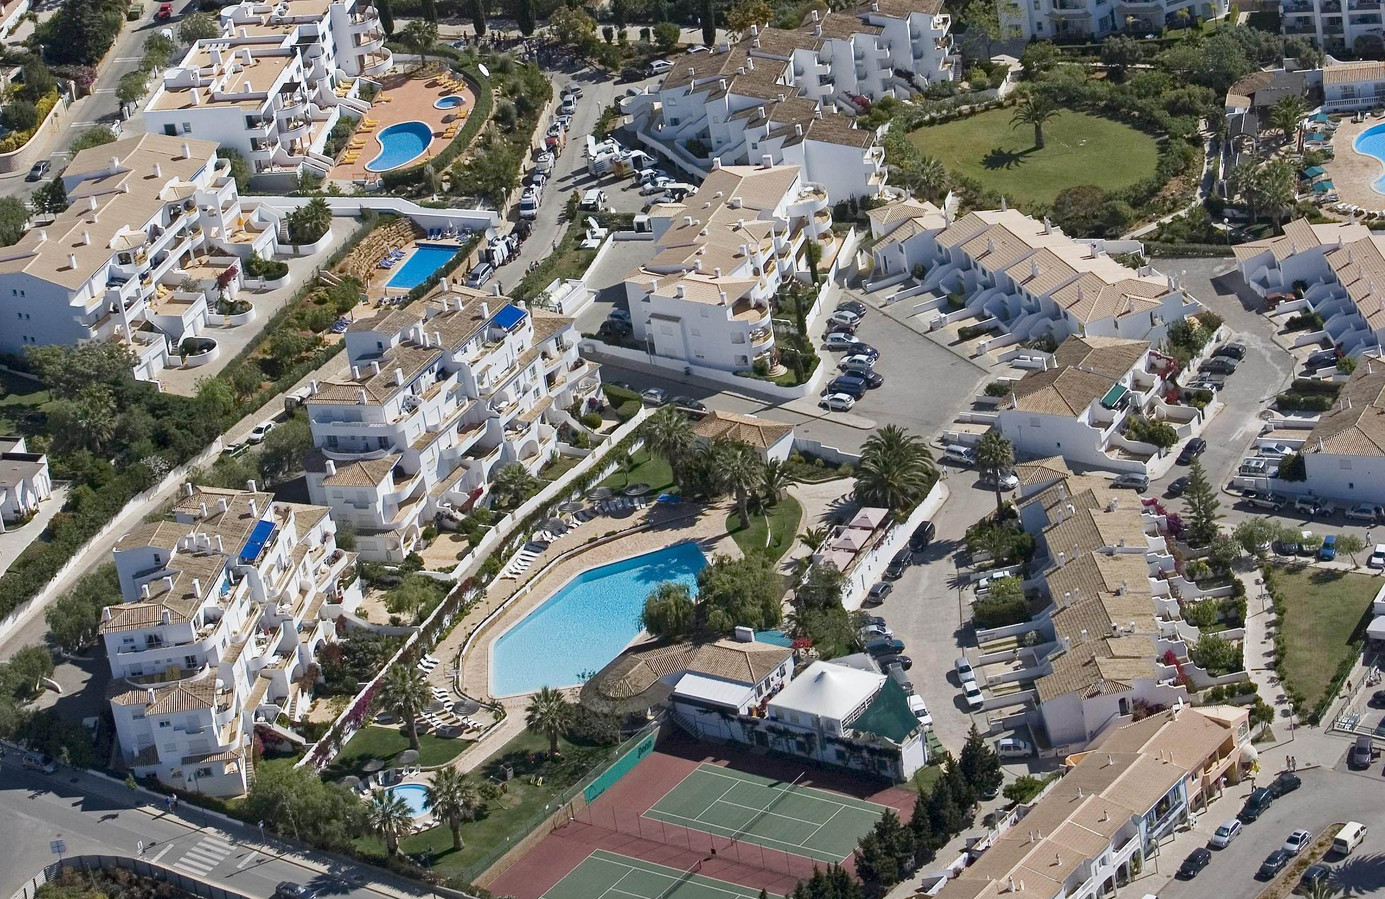 Maddie McCann a disparu de ce complexe hôtelier de Praia da Luz en 2007.